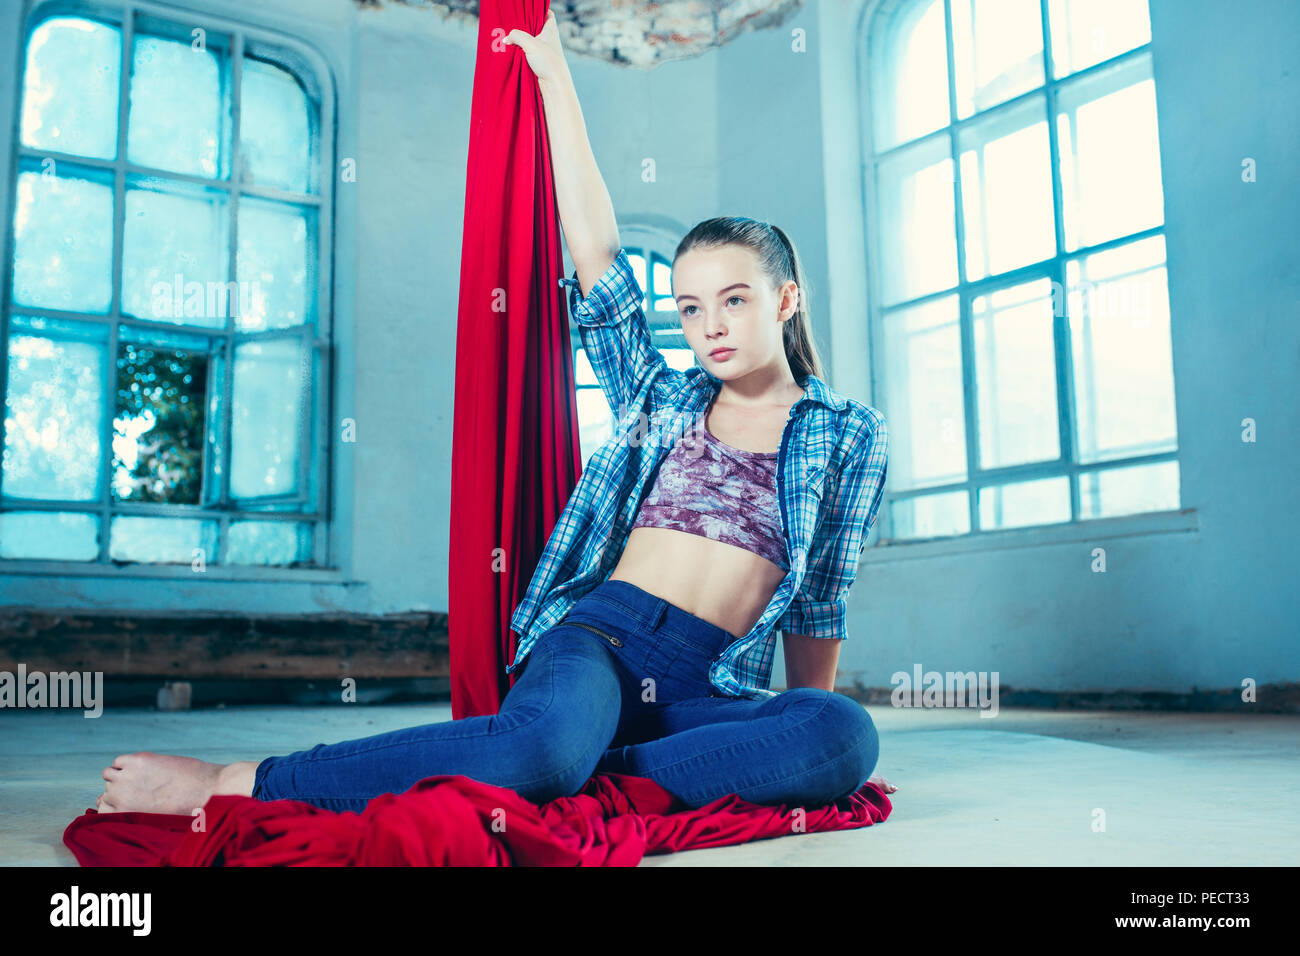 Anmutige gymnast Ausruhen nach Durchführung der Antenne Übung mit roten Stoffen auf Blau alte loft Hintergrund. Jugendliche kaukasischen passen Mädchen. Der Zirkus, Akrobatik, Acrobat, Performer, Sport, Fitness, Gymnastik Konzept Stockfoto